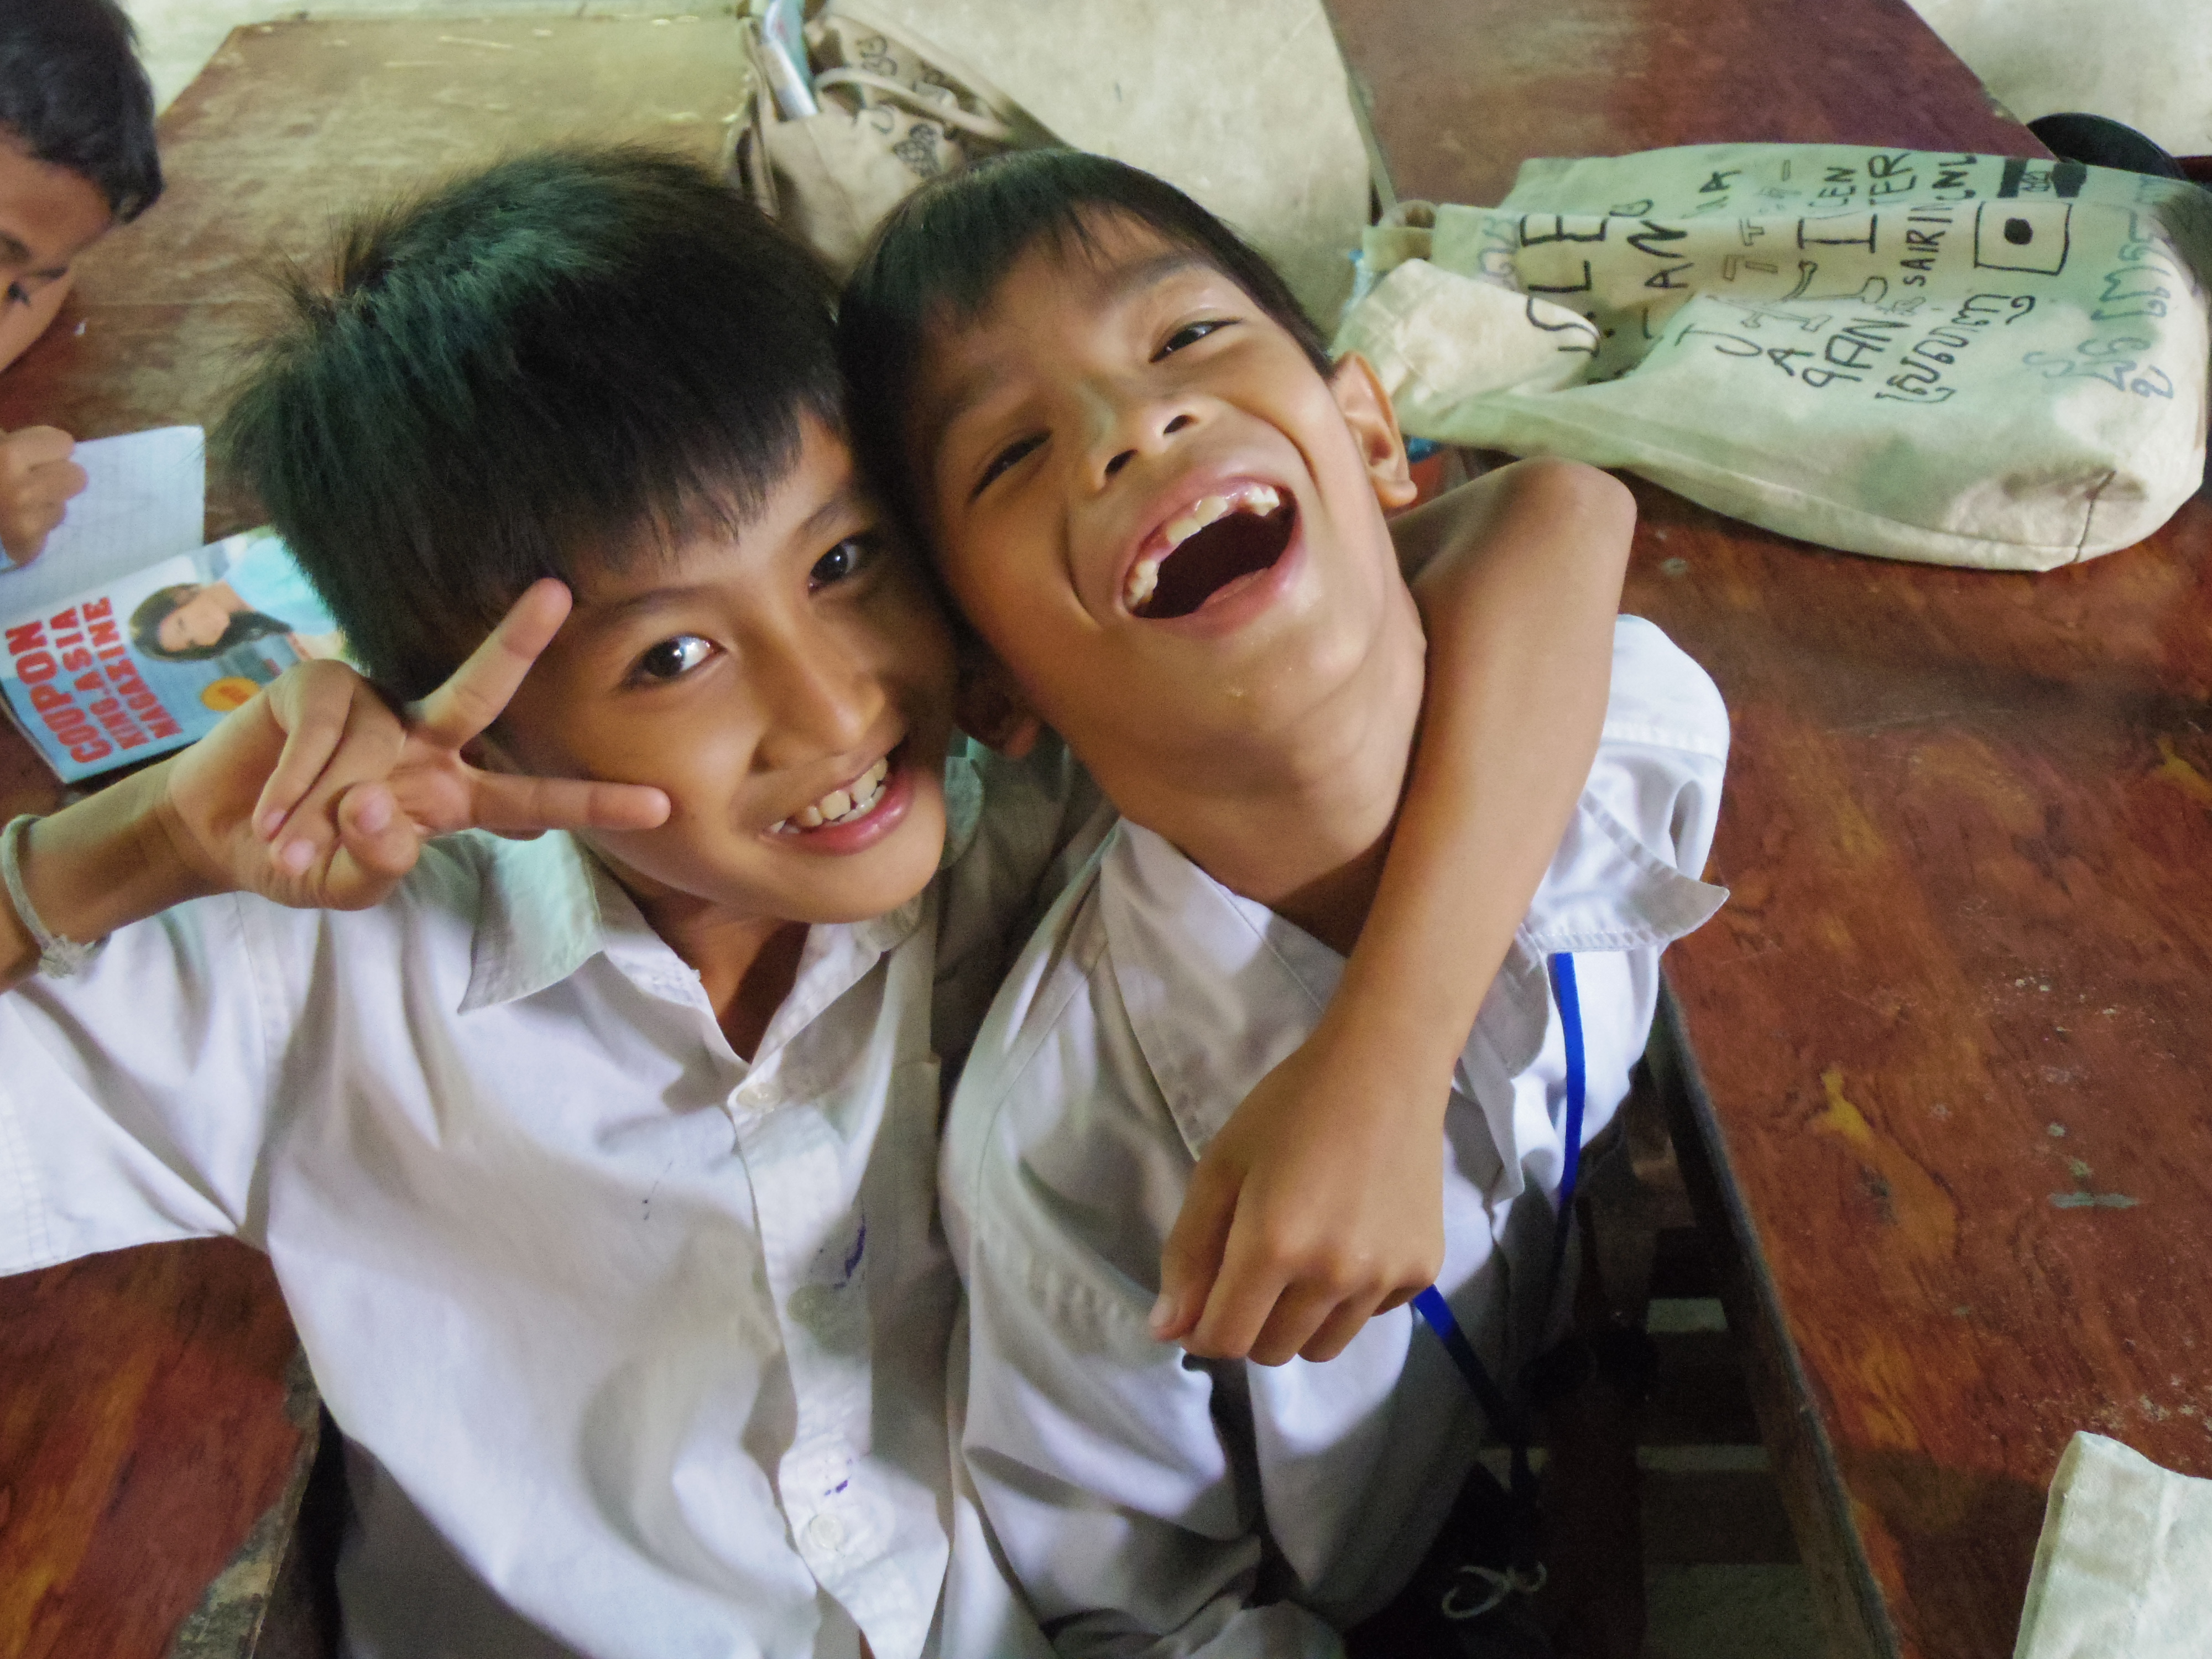 カンボジアの子供たちと遊ぶ。愛センターボランティア記。Vol.1